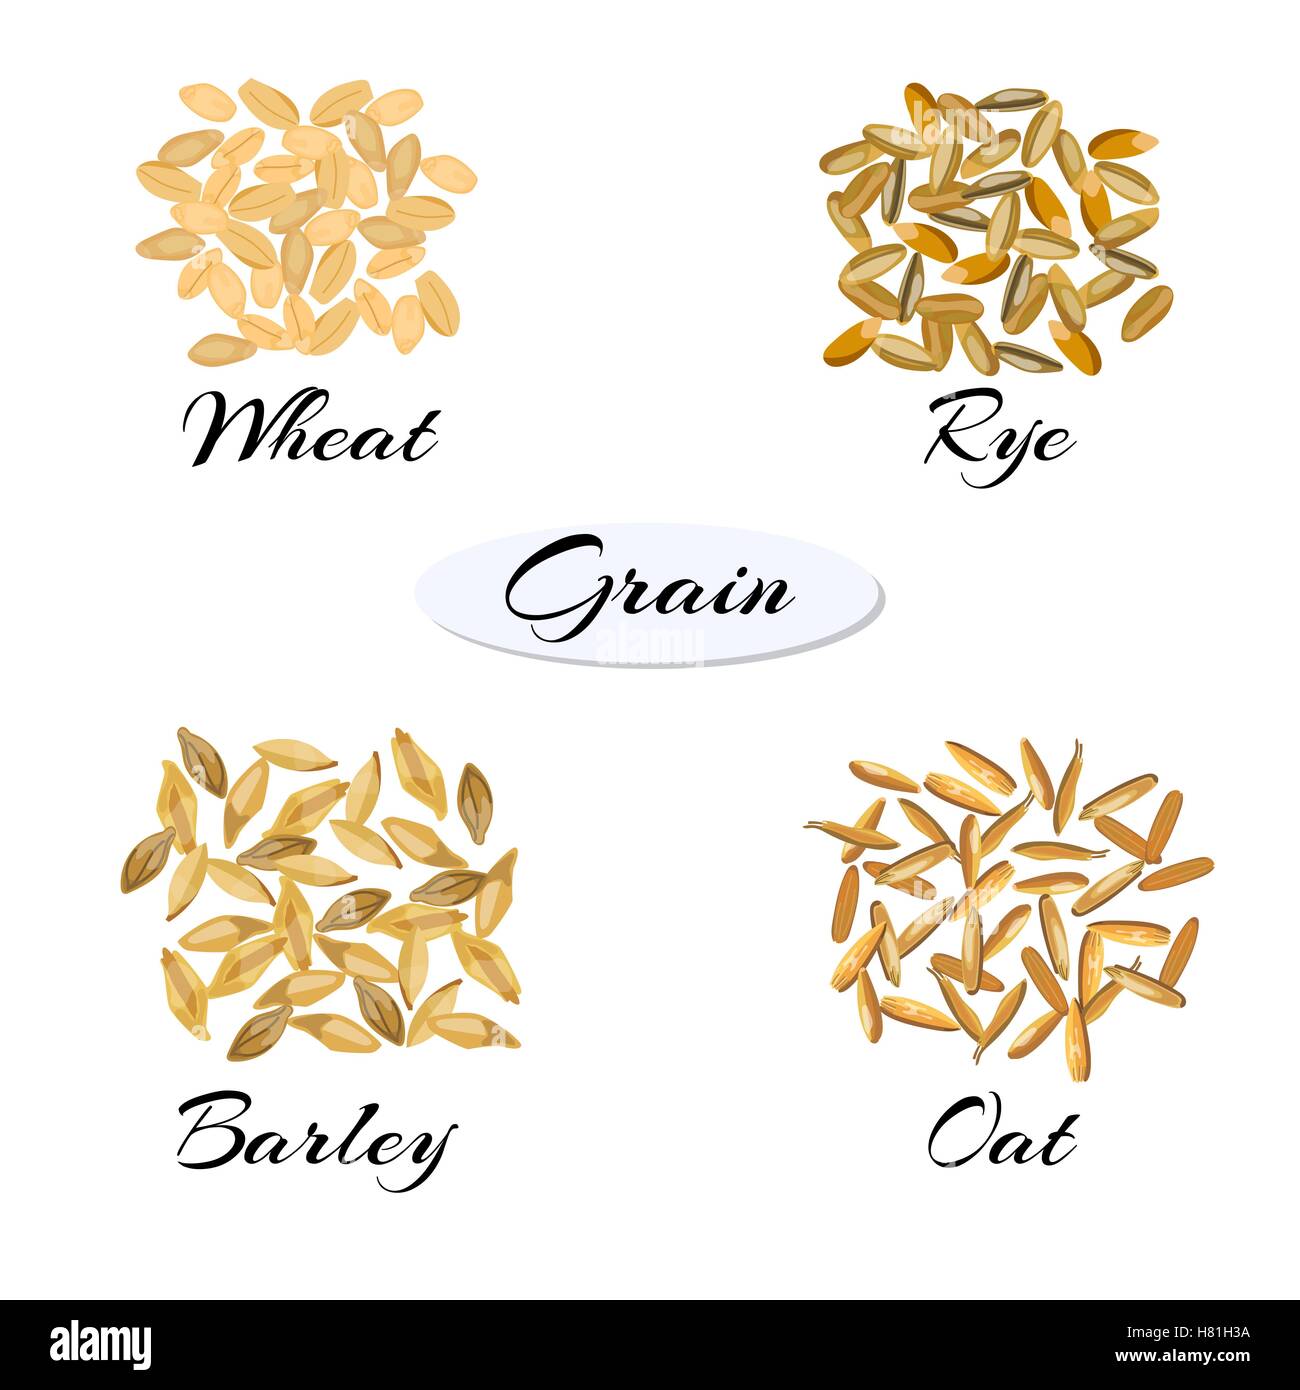 Les céréales. Différents types de grain. Illustration vecteur EPS 10. Illustration de Vecteur